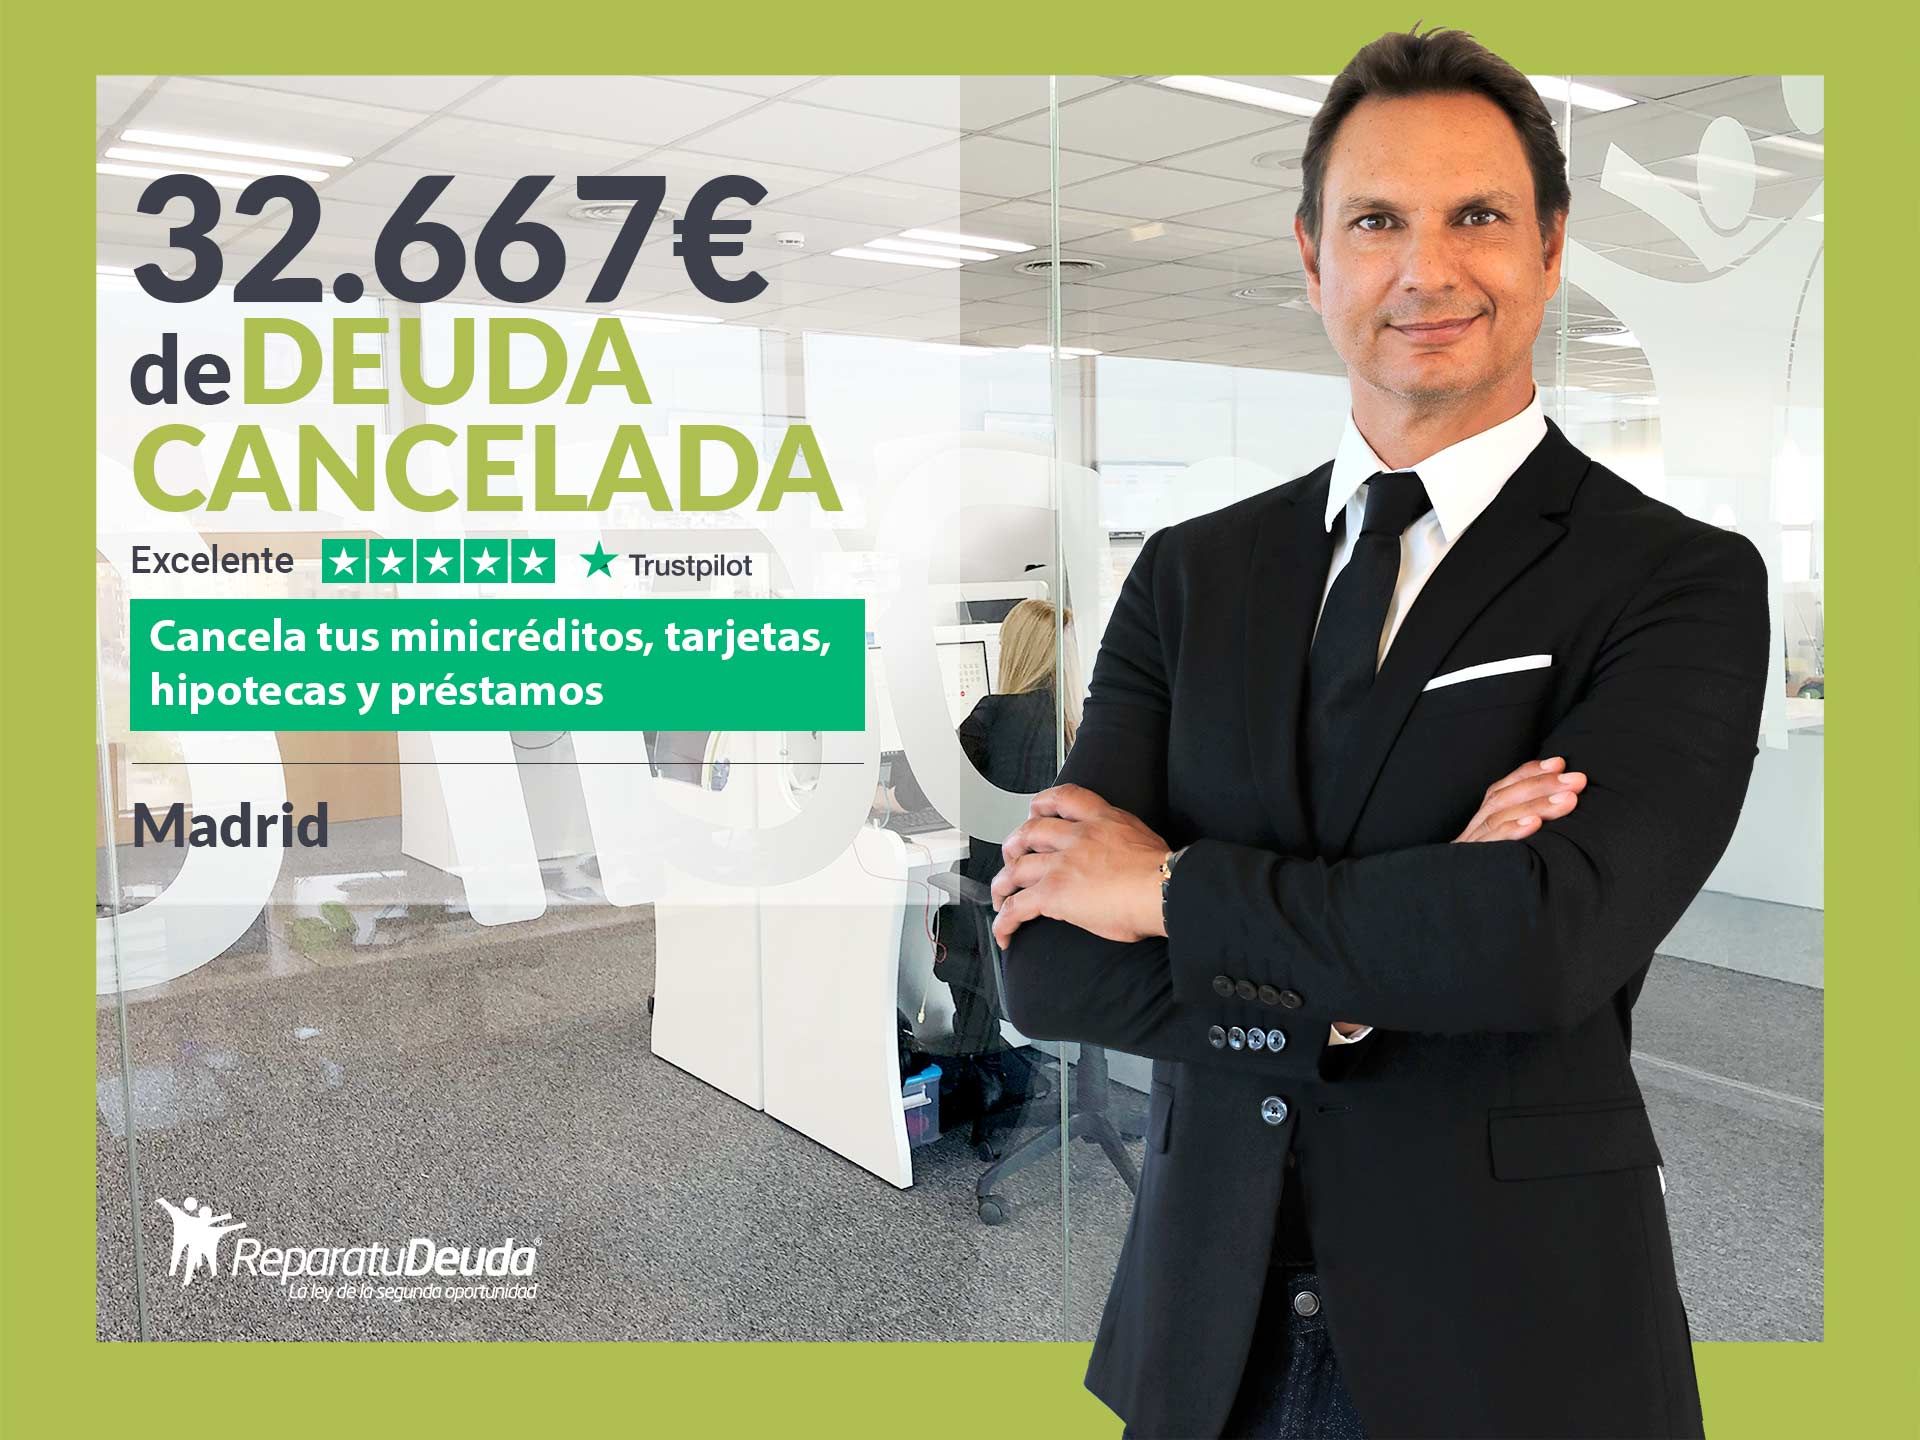 Repara tu Deuda Abogados cancela 32.667? en Madrid con la Ley de Segunda Oportunidad